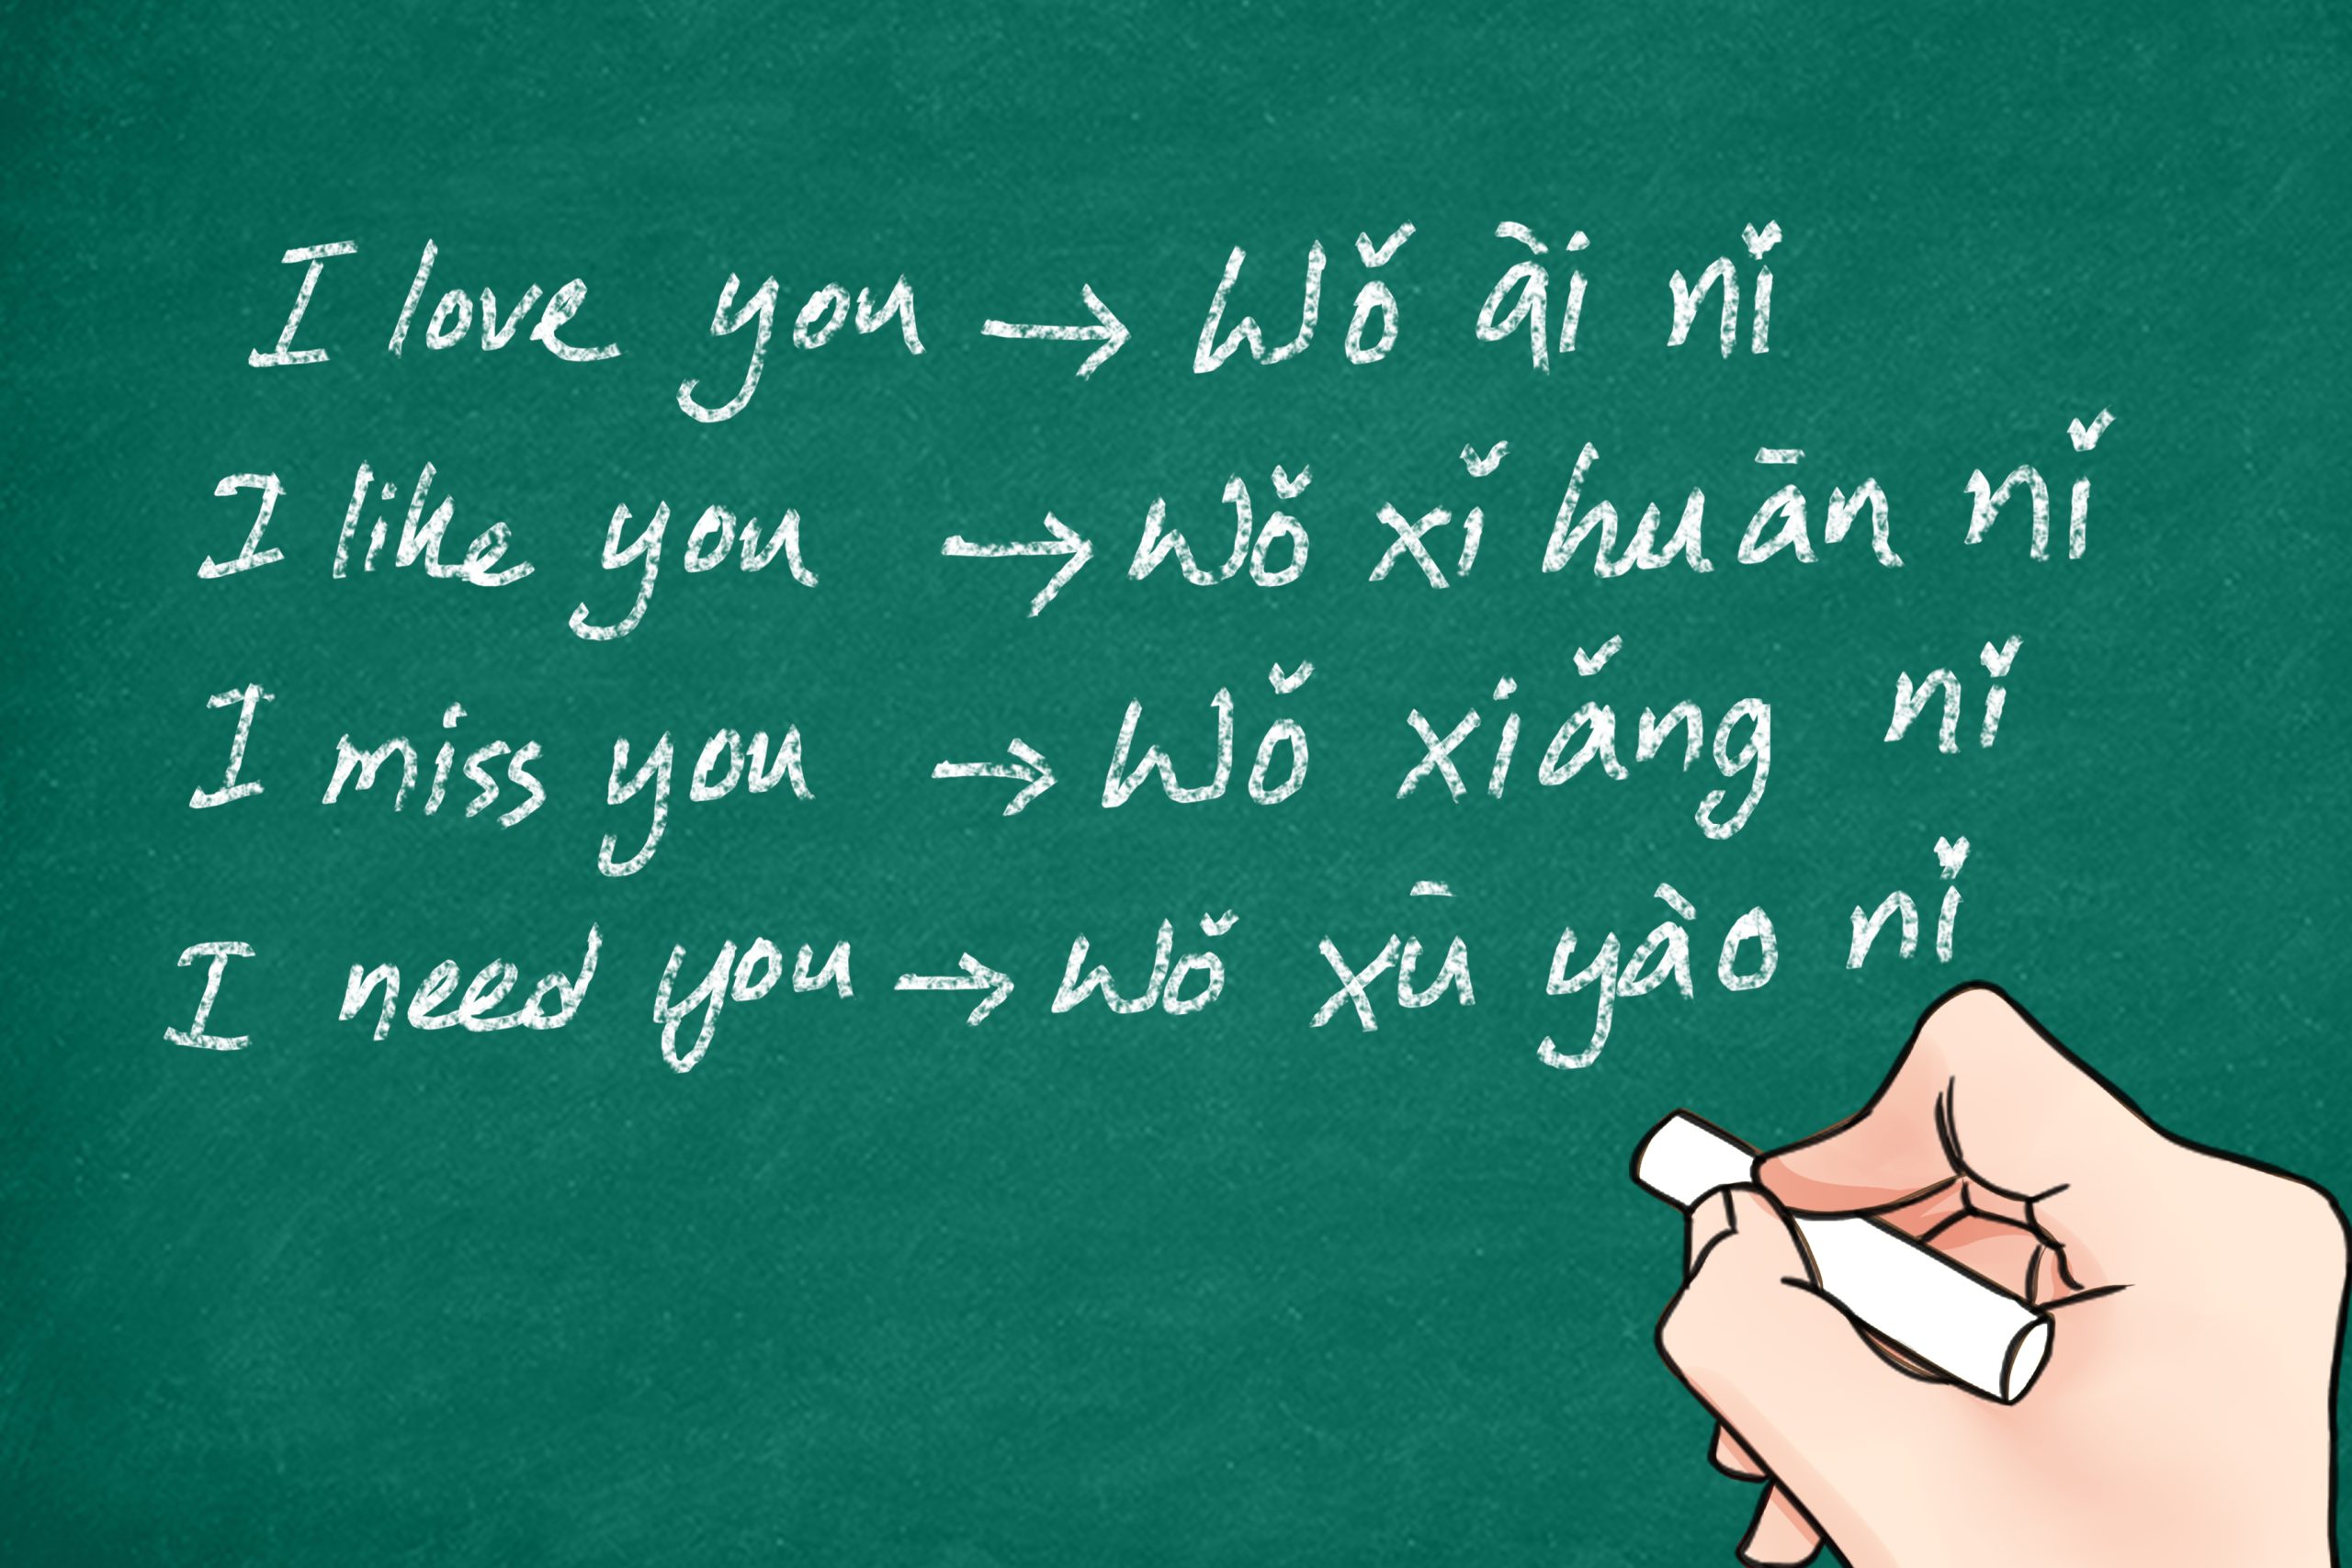 Como dizer “eu sinto sua falta” em chinês.